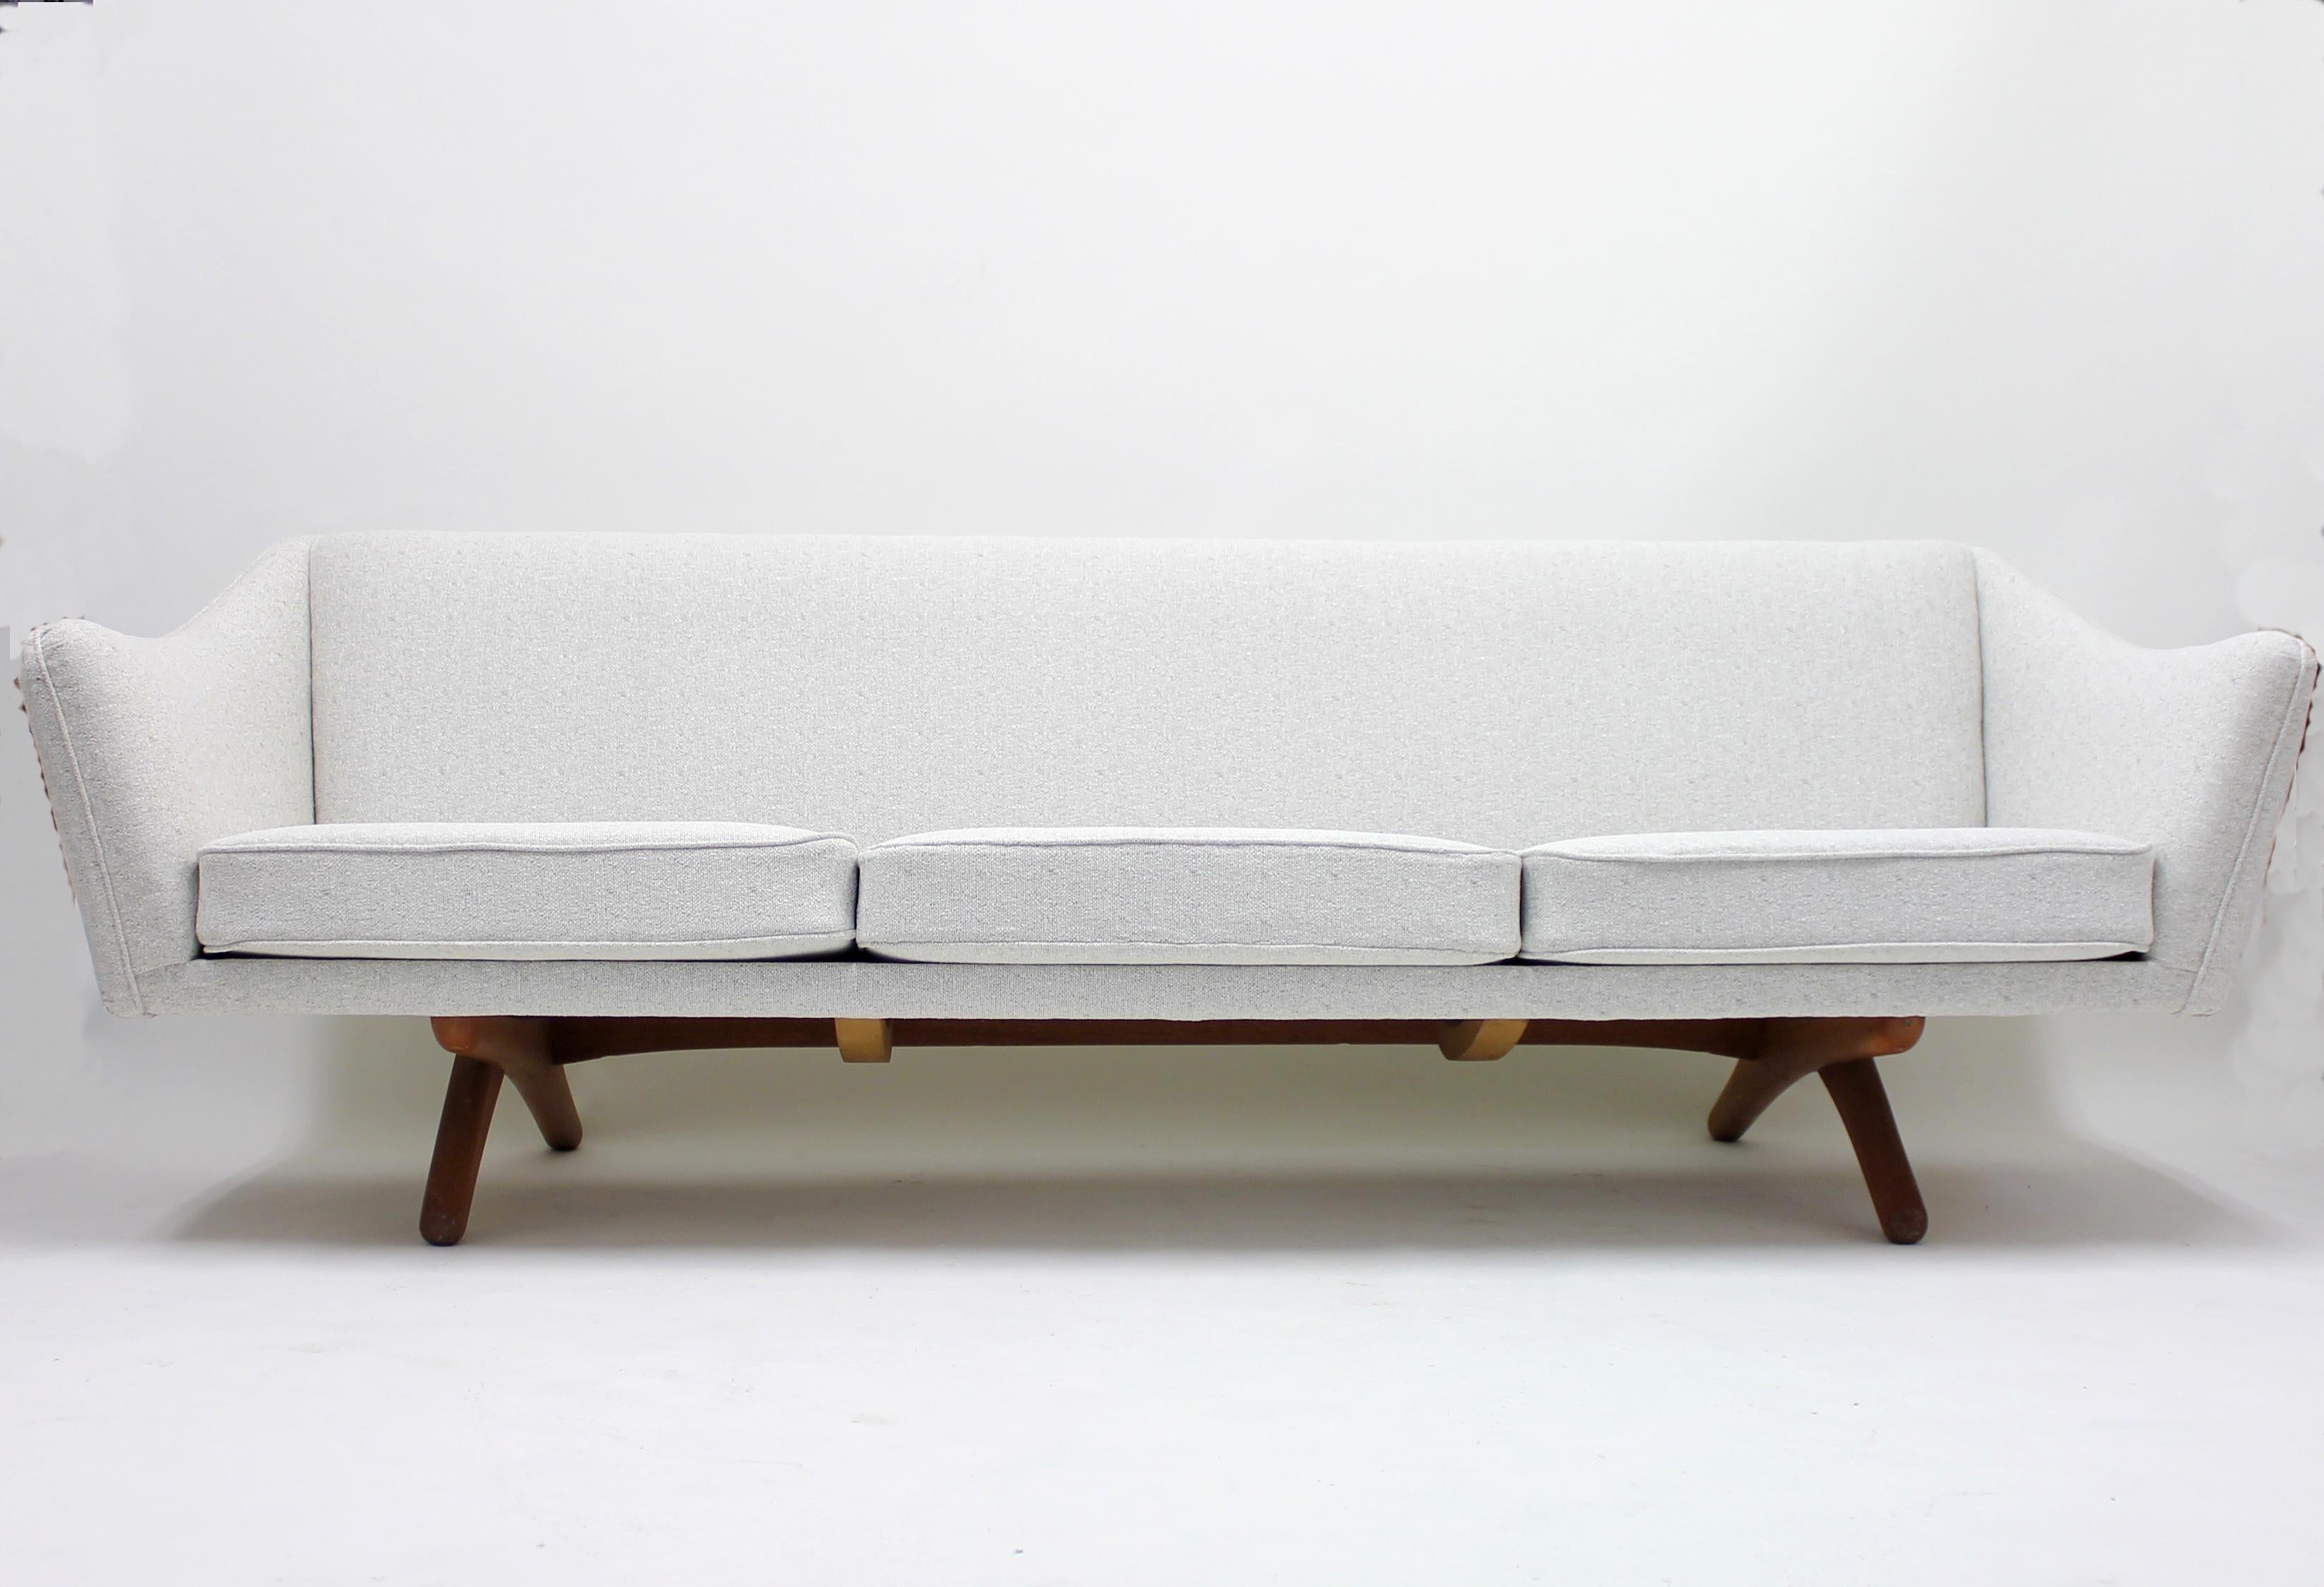 Fabric Illum Wikkelsø sofa model ML-140 for A/S Michael Laursen, Denmark, 1950s